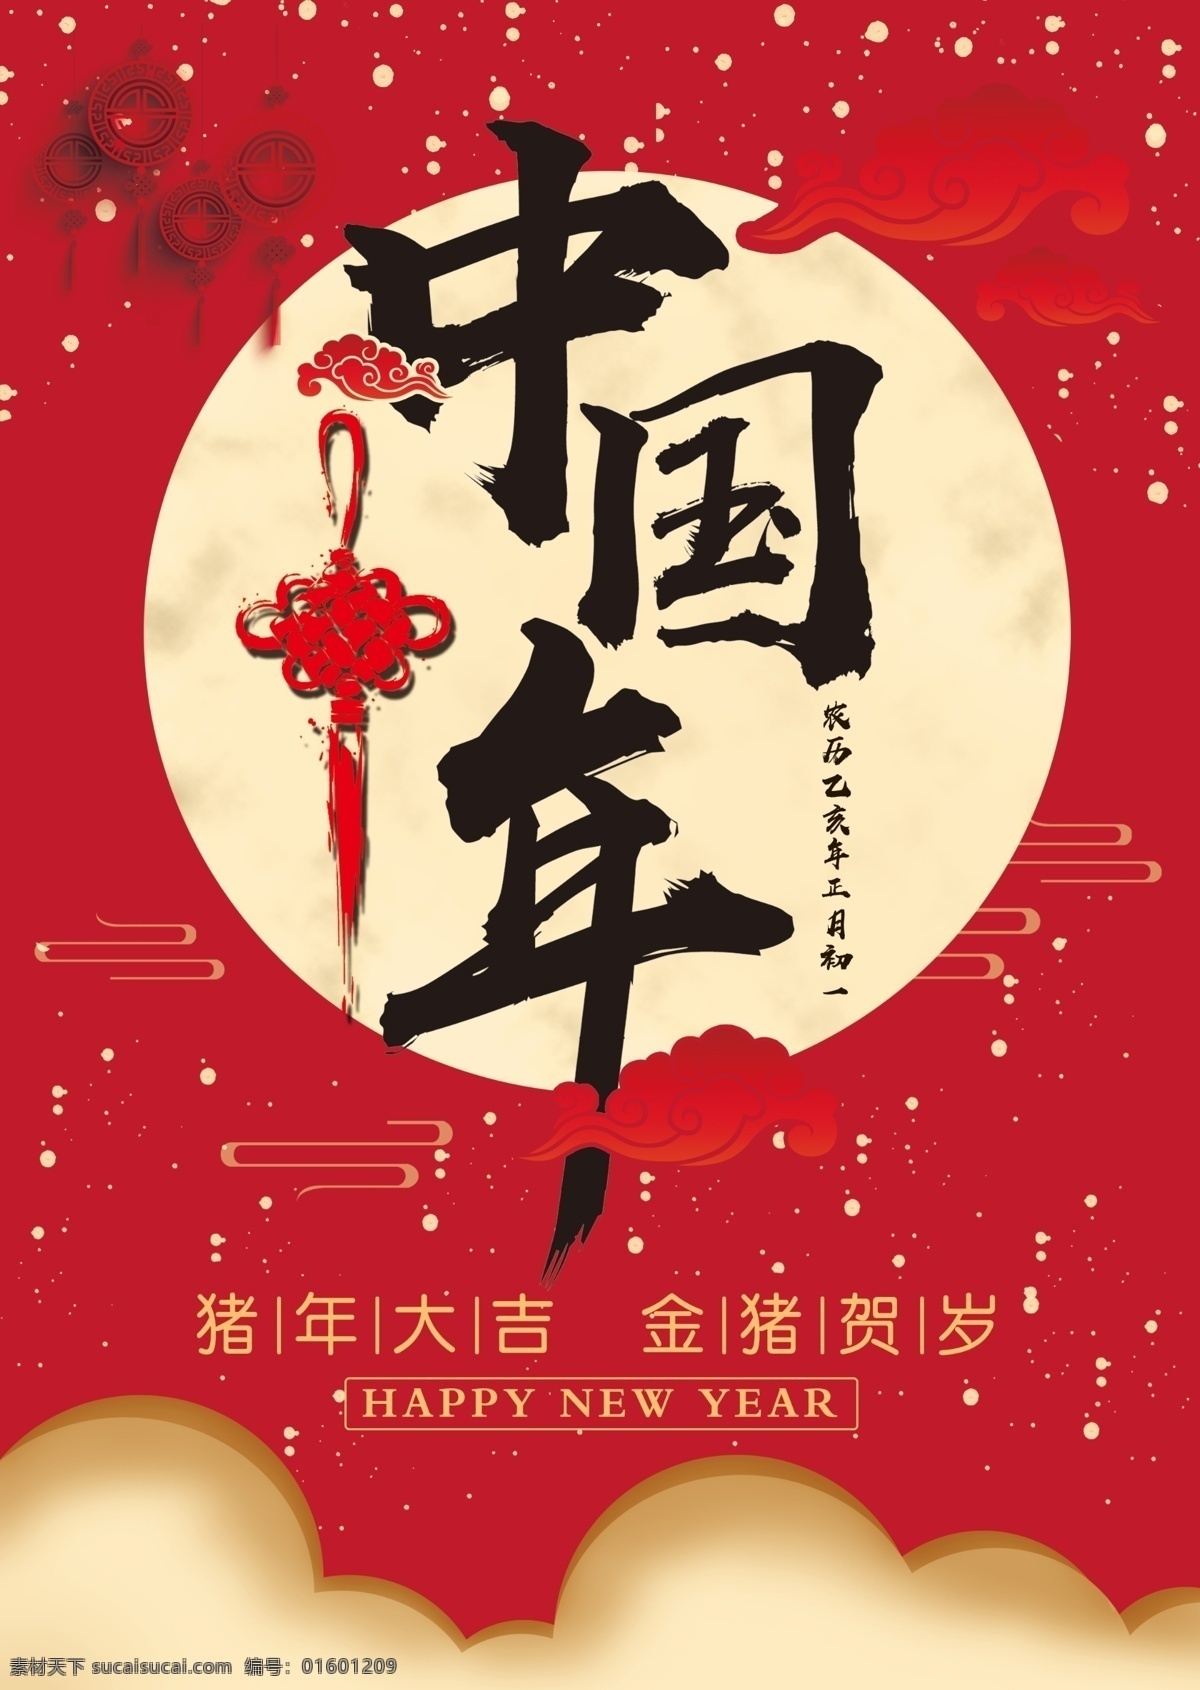 中国年 过年 初一 正月 灯笼 云 月亮 中国结 红色 中国红 底色 分层